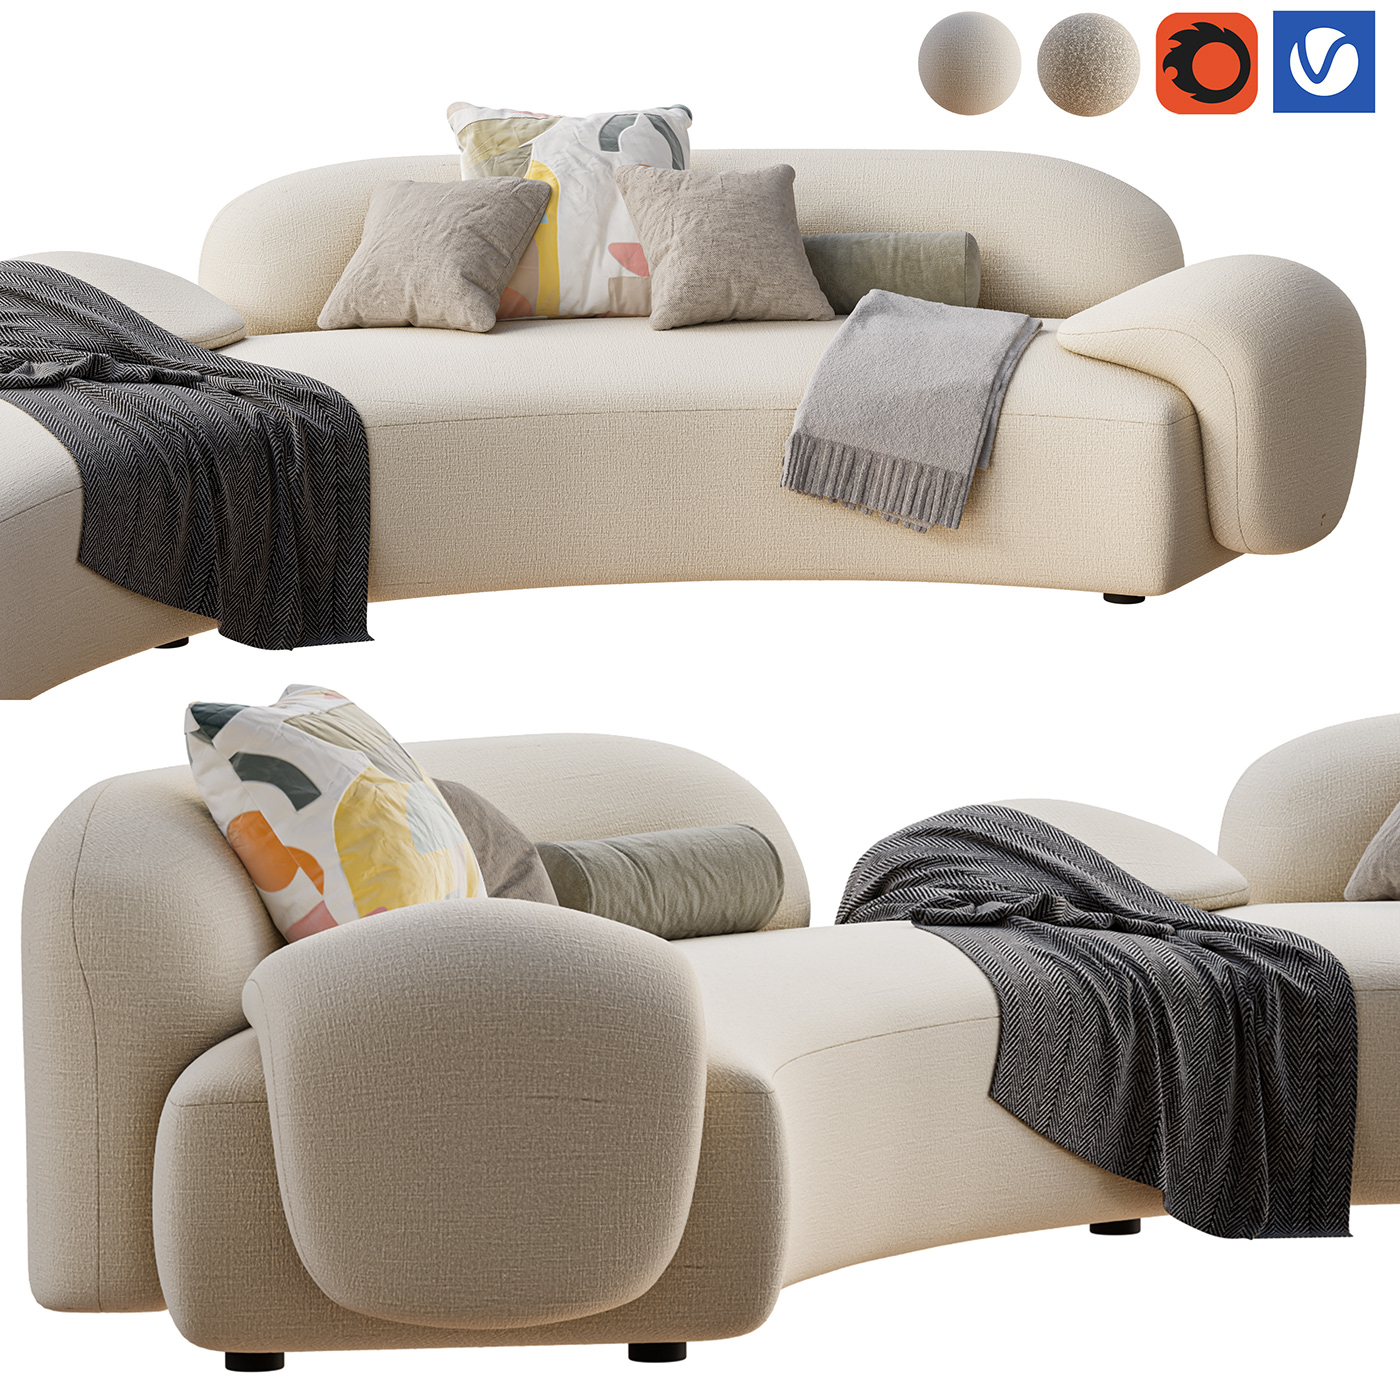 Couch sofa furniture interior design  visualization modern architecture archviz Render